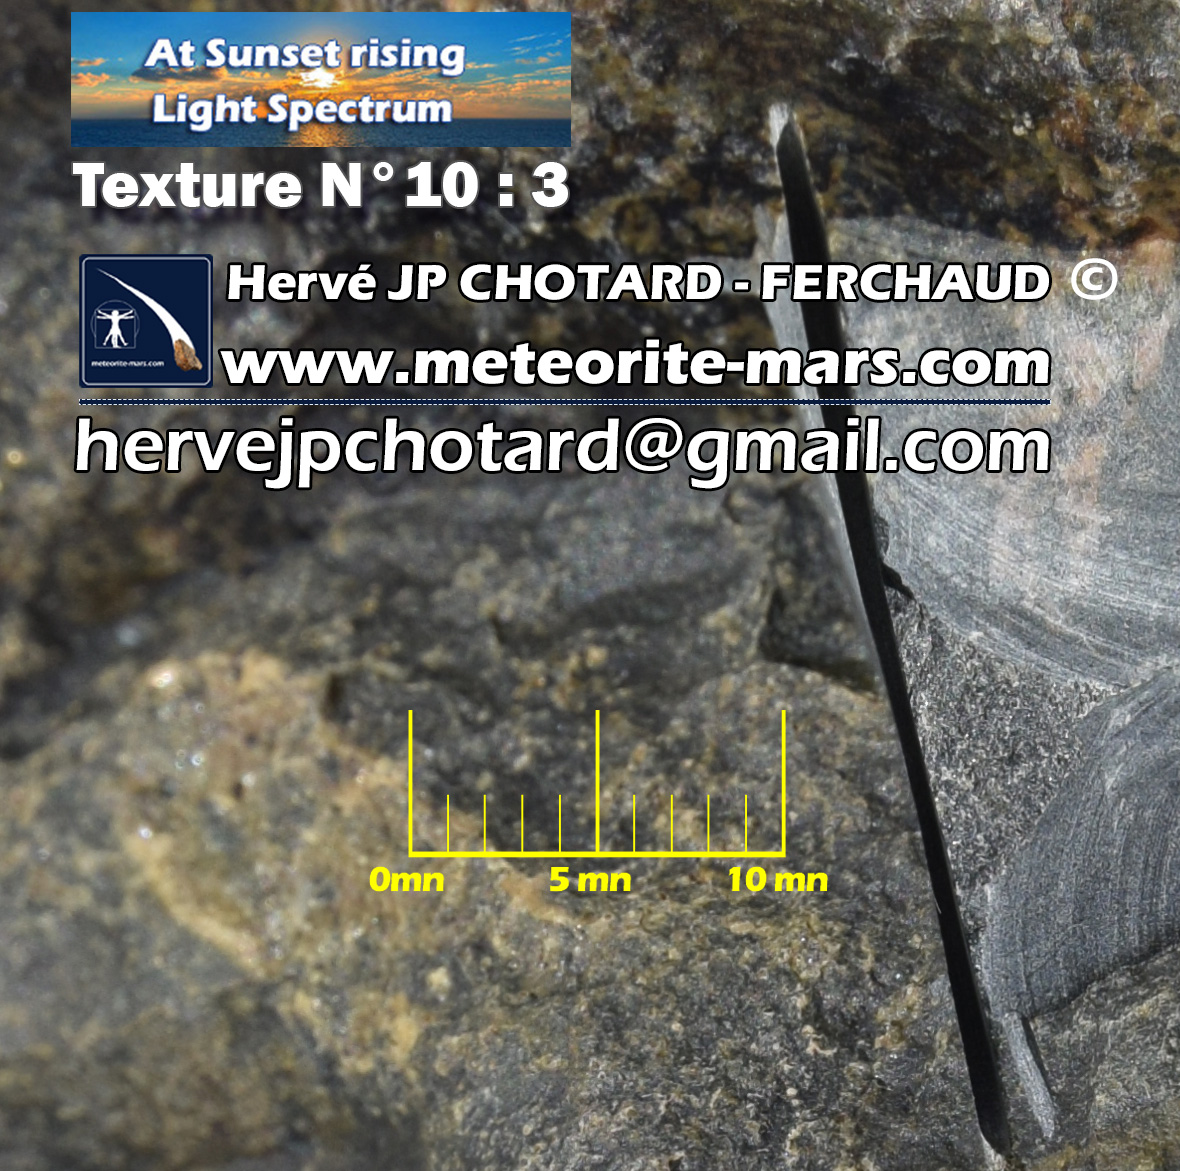 Texture N 10-3 www.meteorite-mars.com